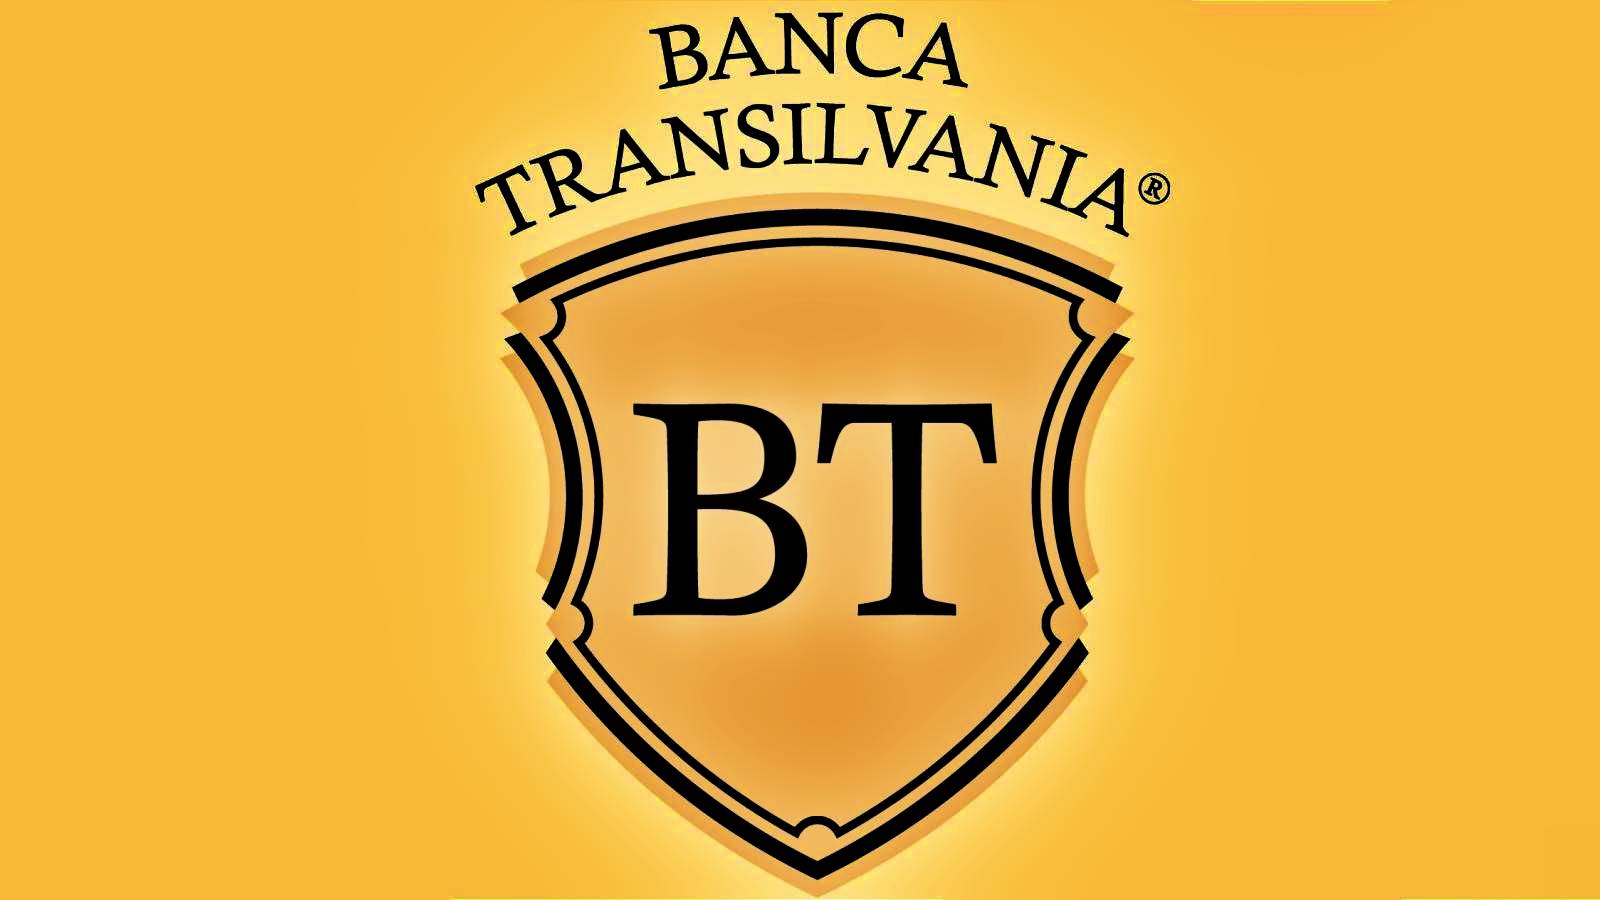 BANCA Transilvania Klanten in Roemenië moeten VOORZICHTIG zijn